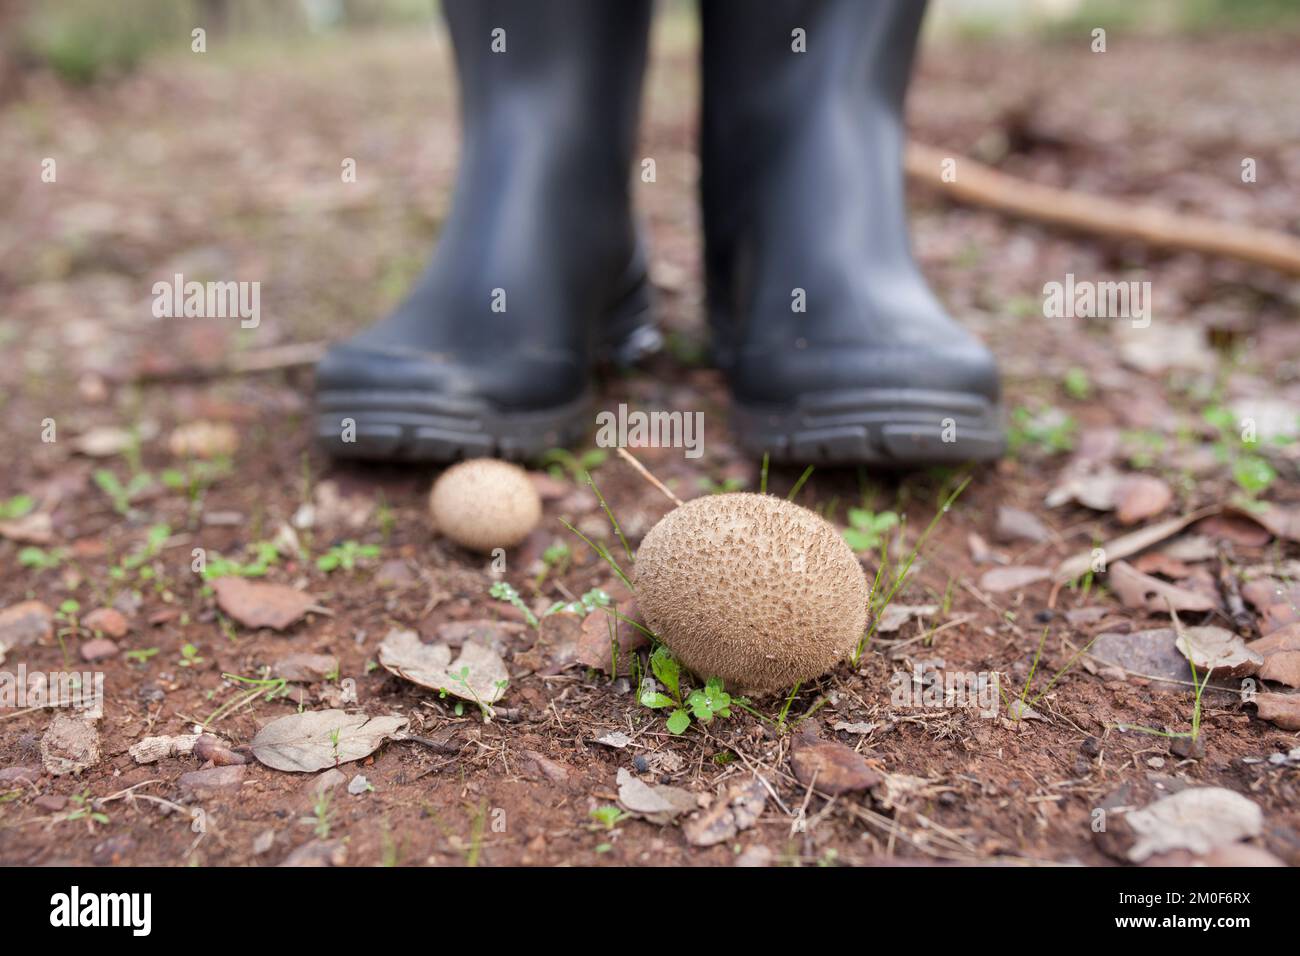 Funghi Puffball o lycooperdon. Vista a terra con scarponi da pioggia come sfondo Foto Stock